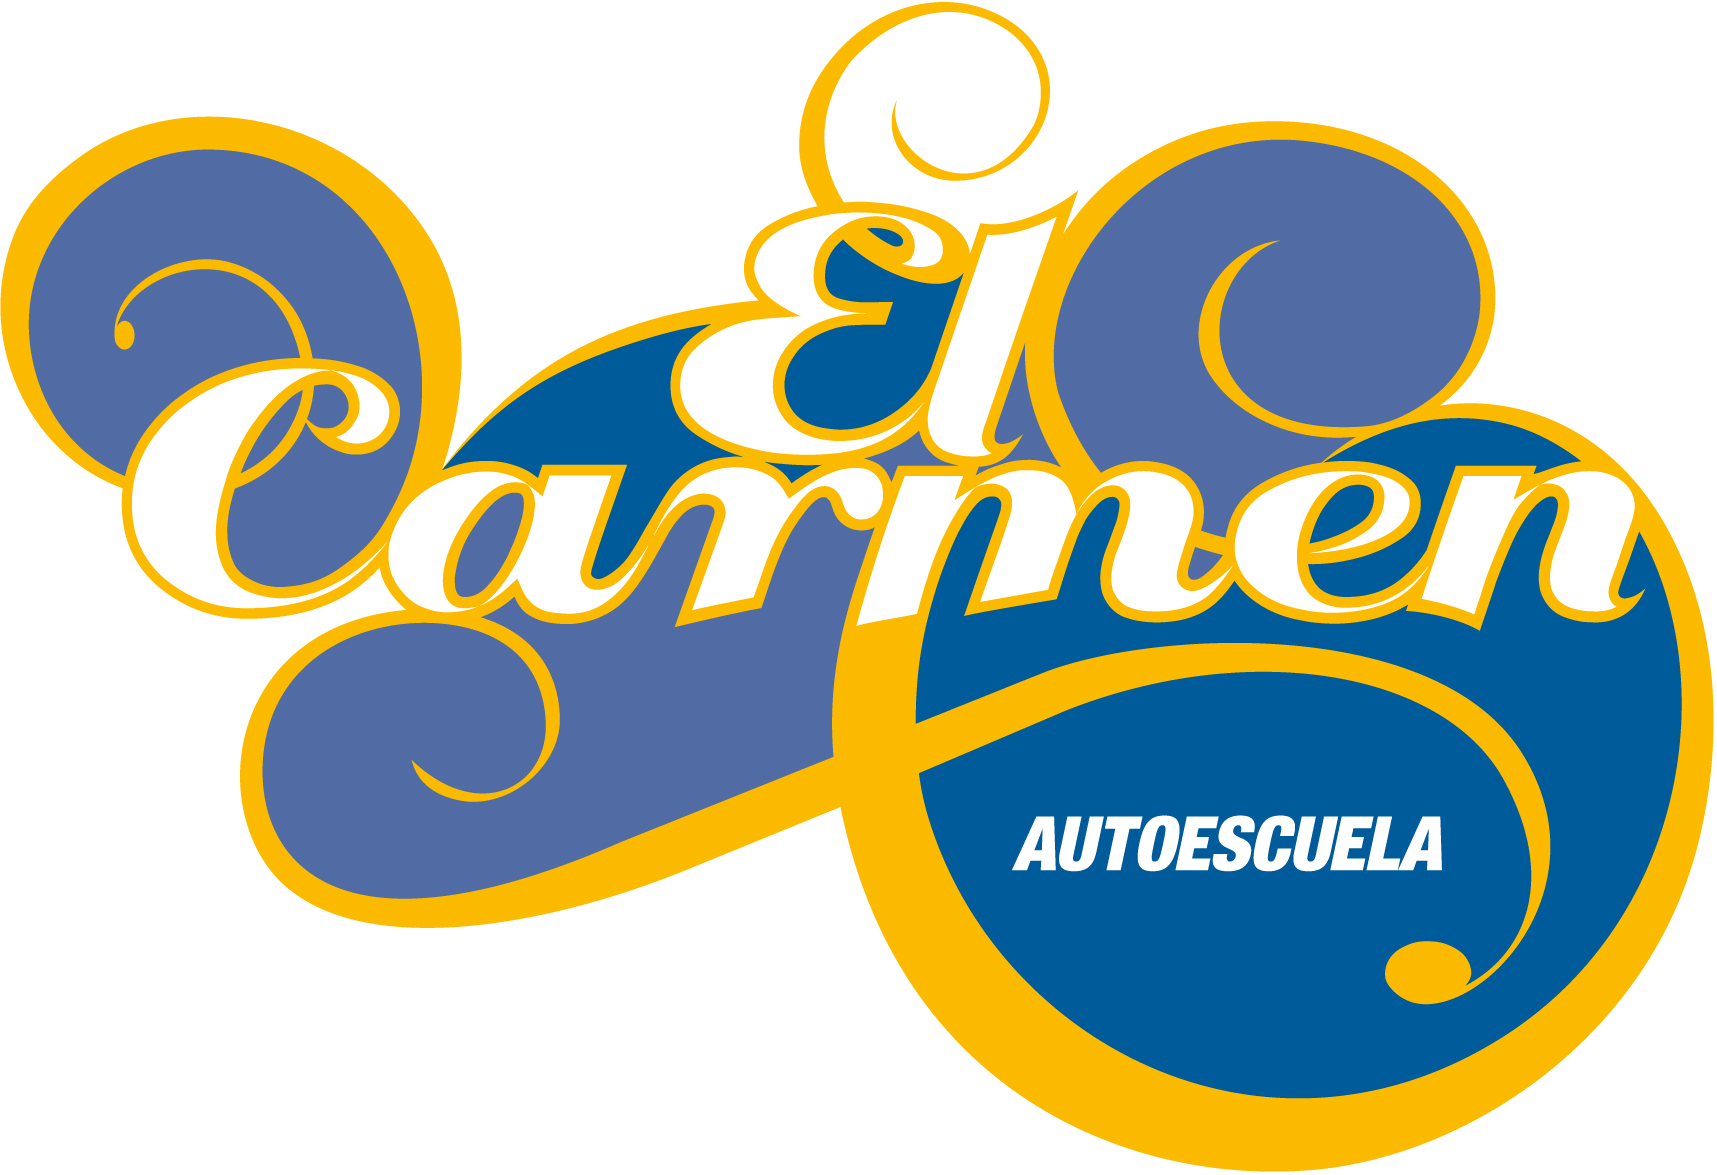 Autoescuela - Autoescuela El Carmen 